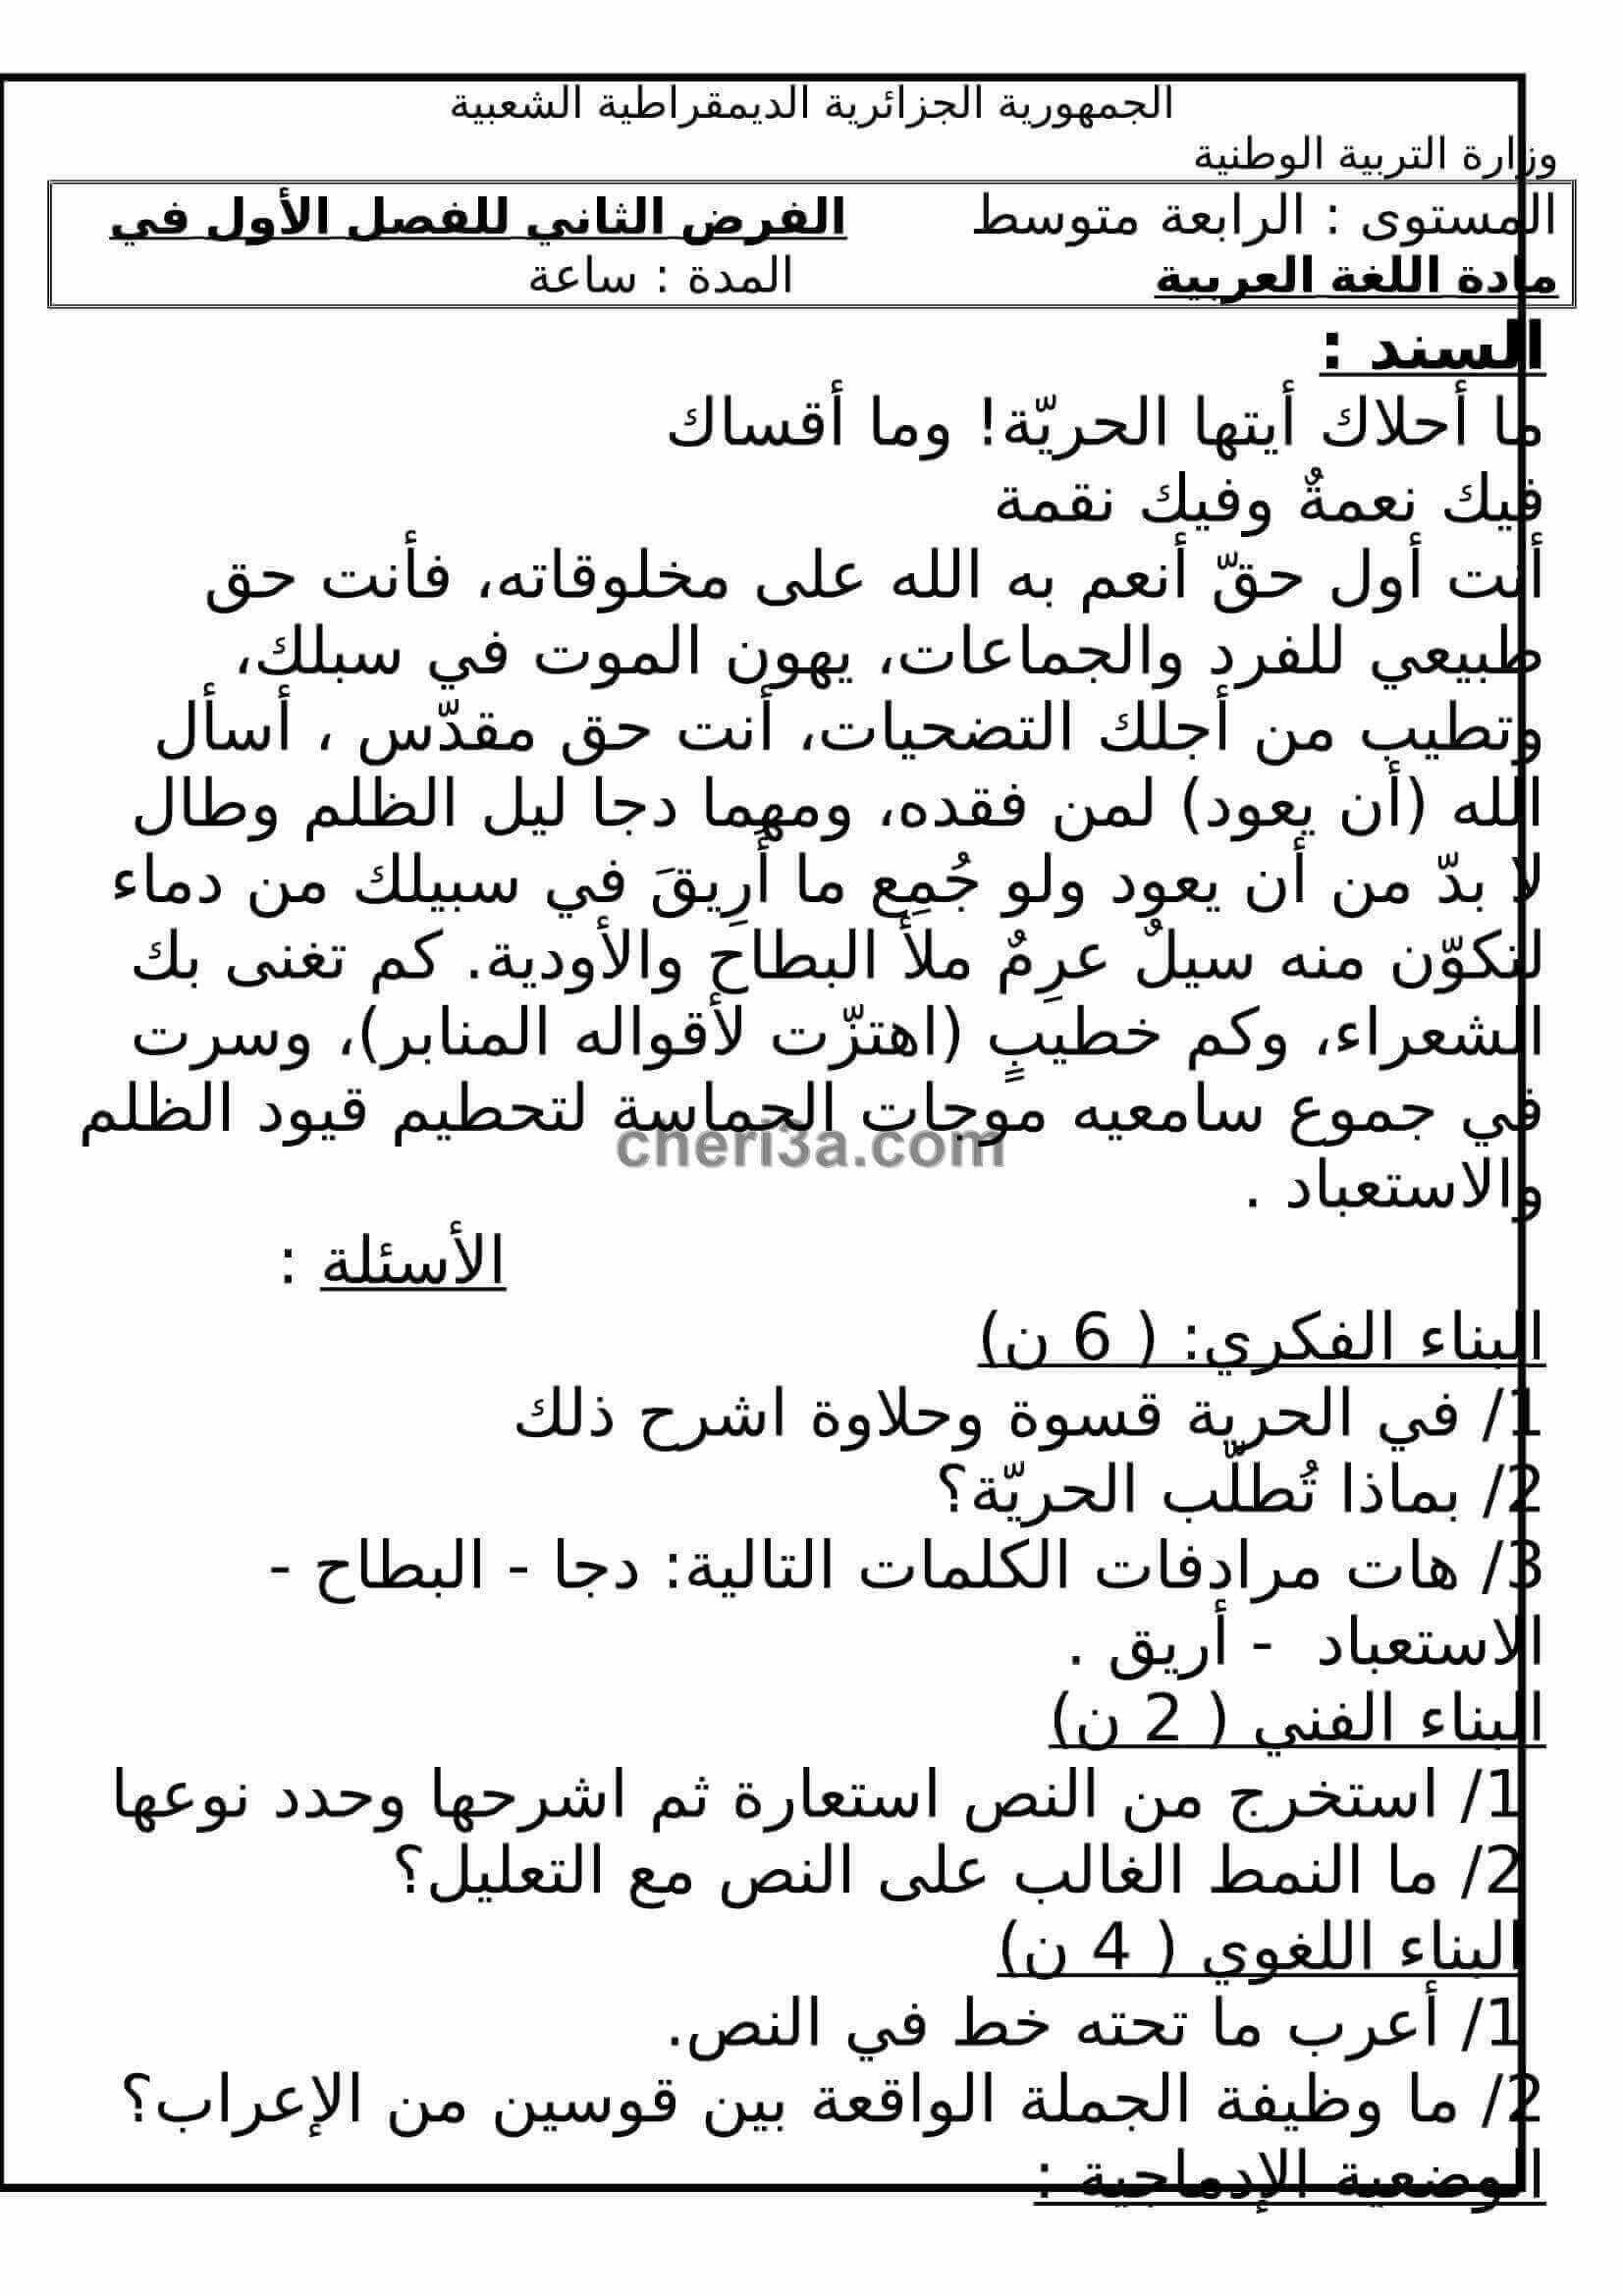 اختبار الفصل الاول للسنة الرابعة متوسط في اللغة العربية النموذج 4